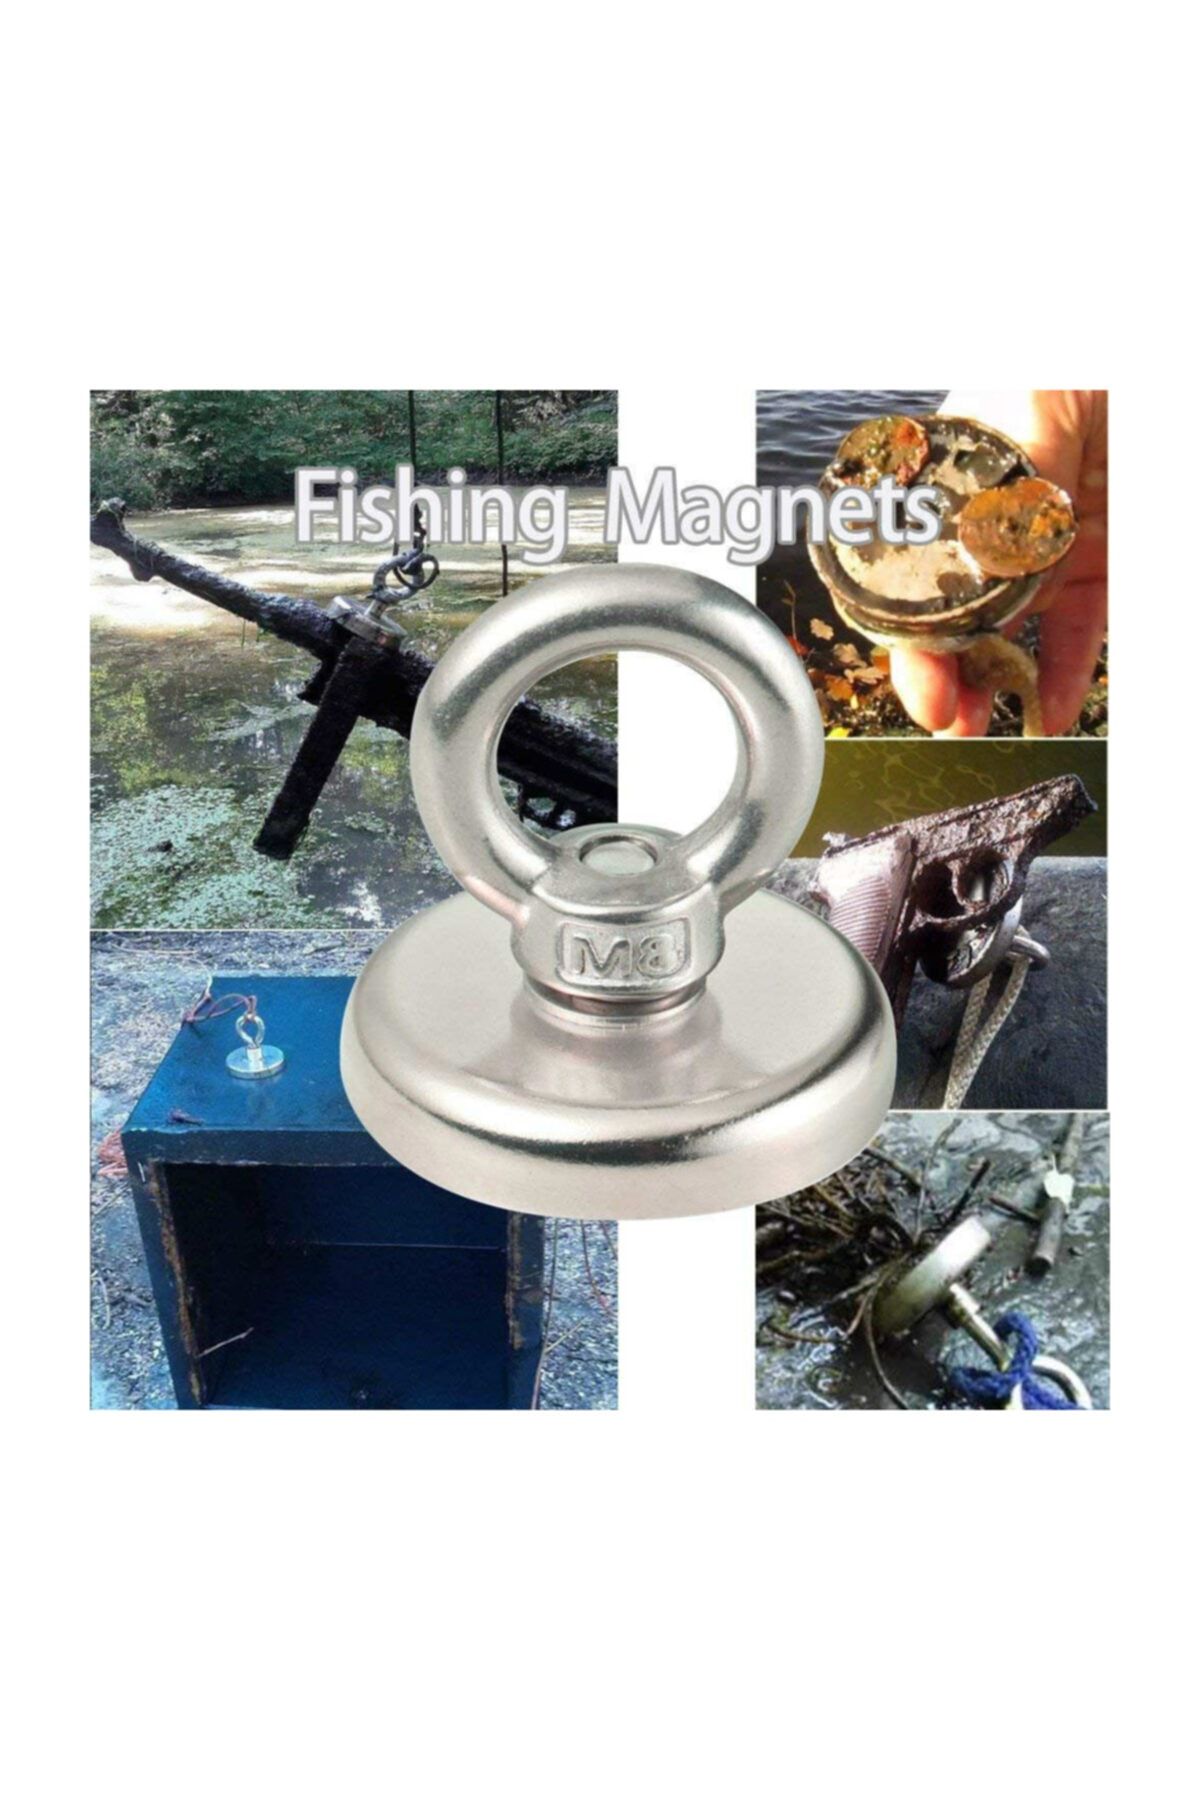 Dünya Magnet Magnet Fishing, 25mm Askılı Güçlü Neodyum Mıknatıs, Kurtarma Mıknatısı